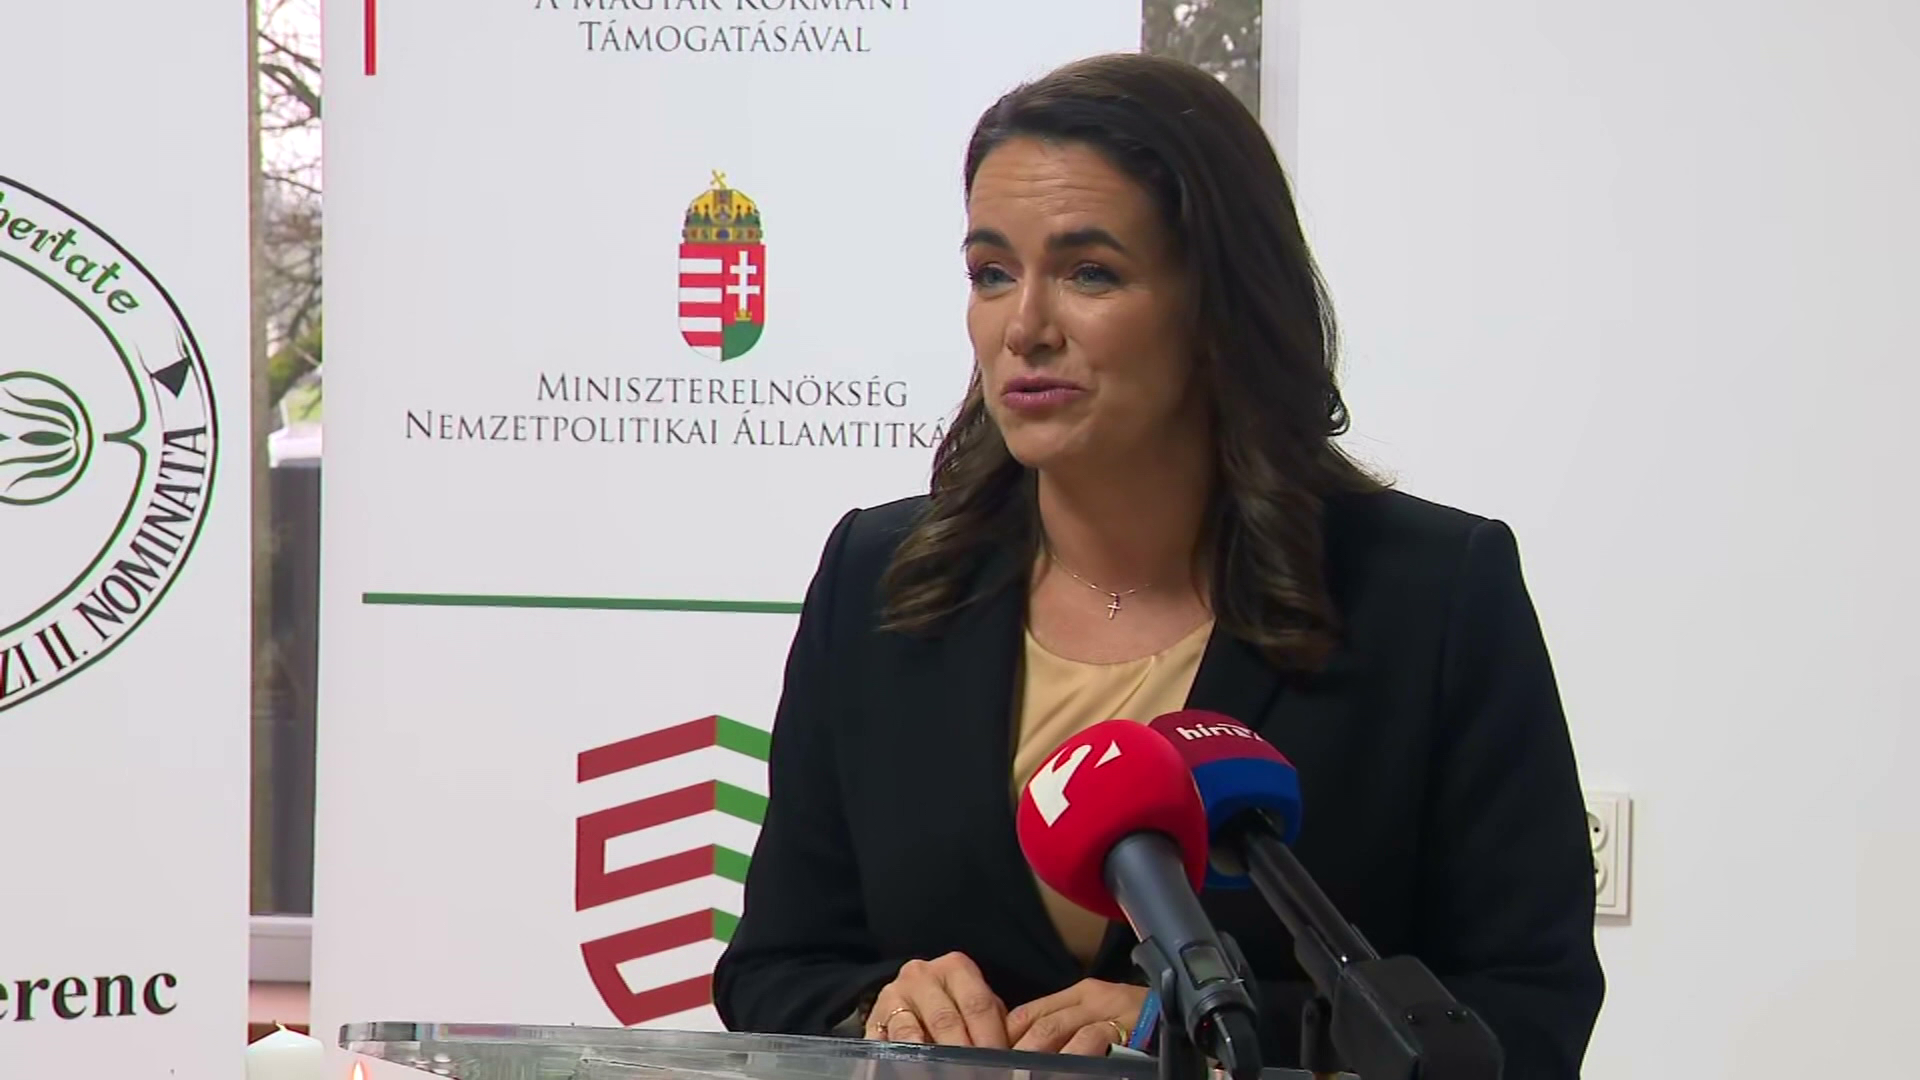 Radar - Novák Katalin: Legyen békés jövő a magyaroknak is Kárpátalján! 